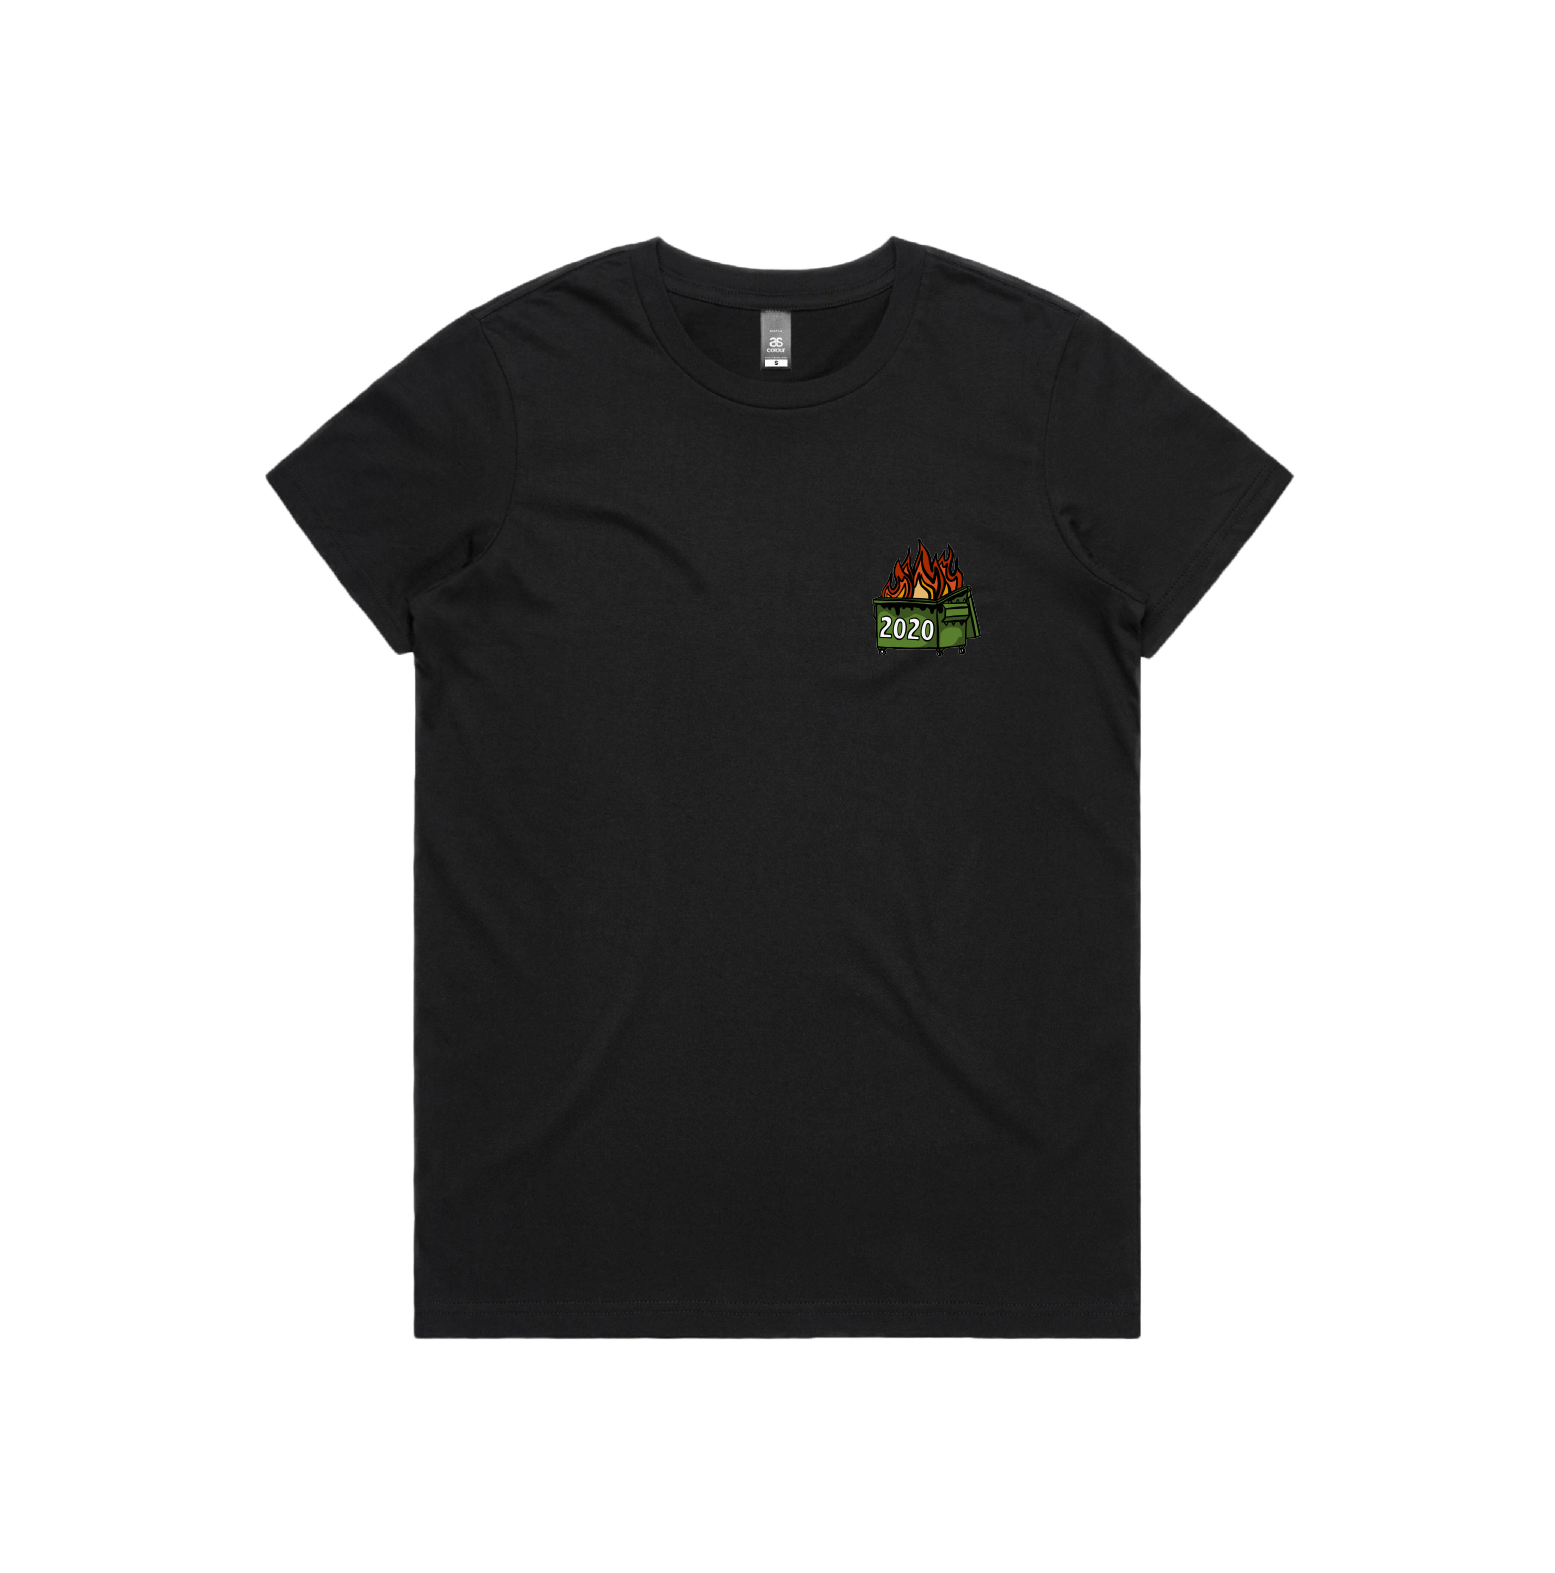 XS / Black / Small Front Design 2020 Dumpster Fire 🗑️ - Women's T Shirt